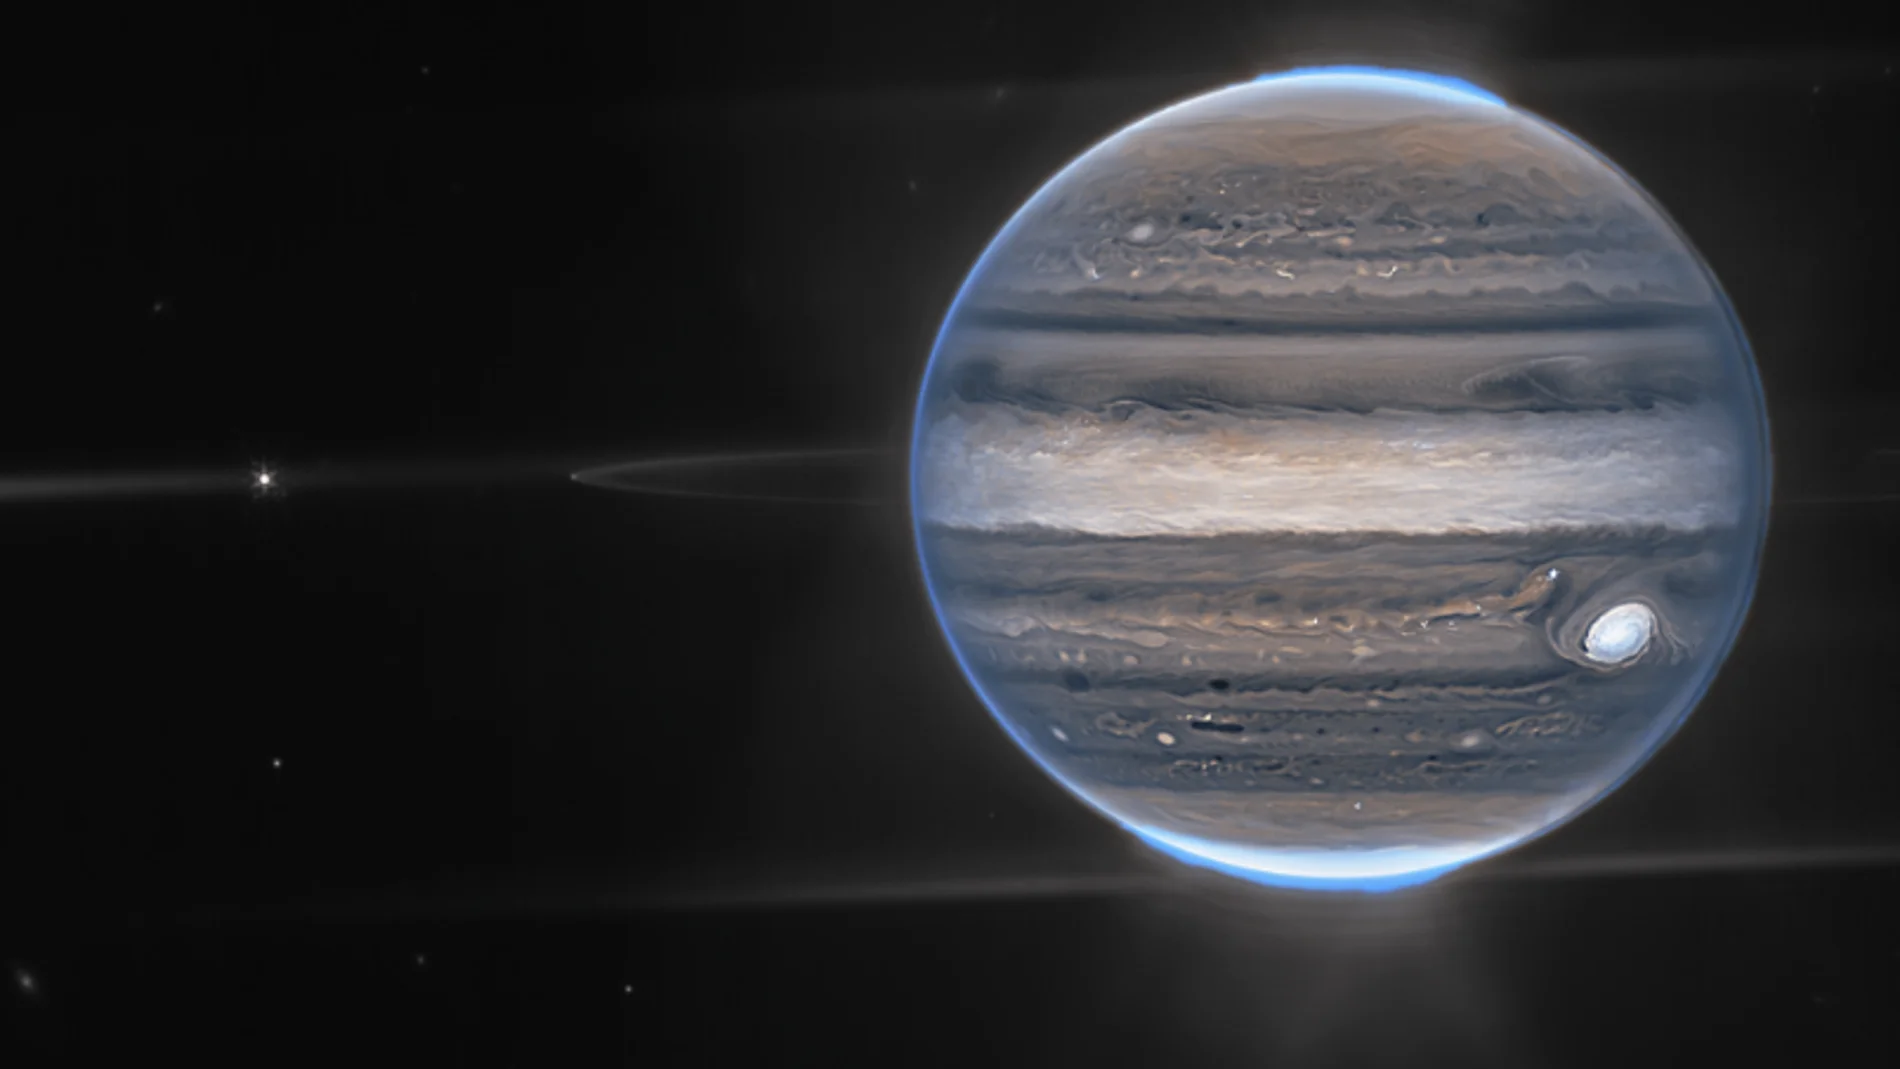 Júpiter inédito: dos nuevas imágenes del Telescopio James Webb arrojan pistas sobre su vida interna